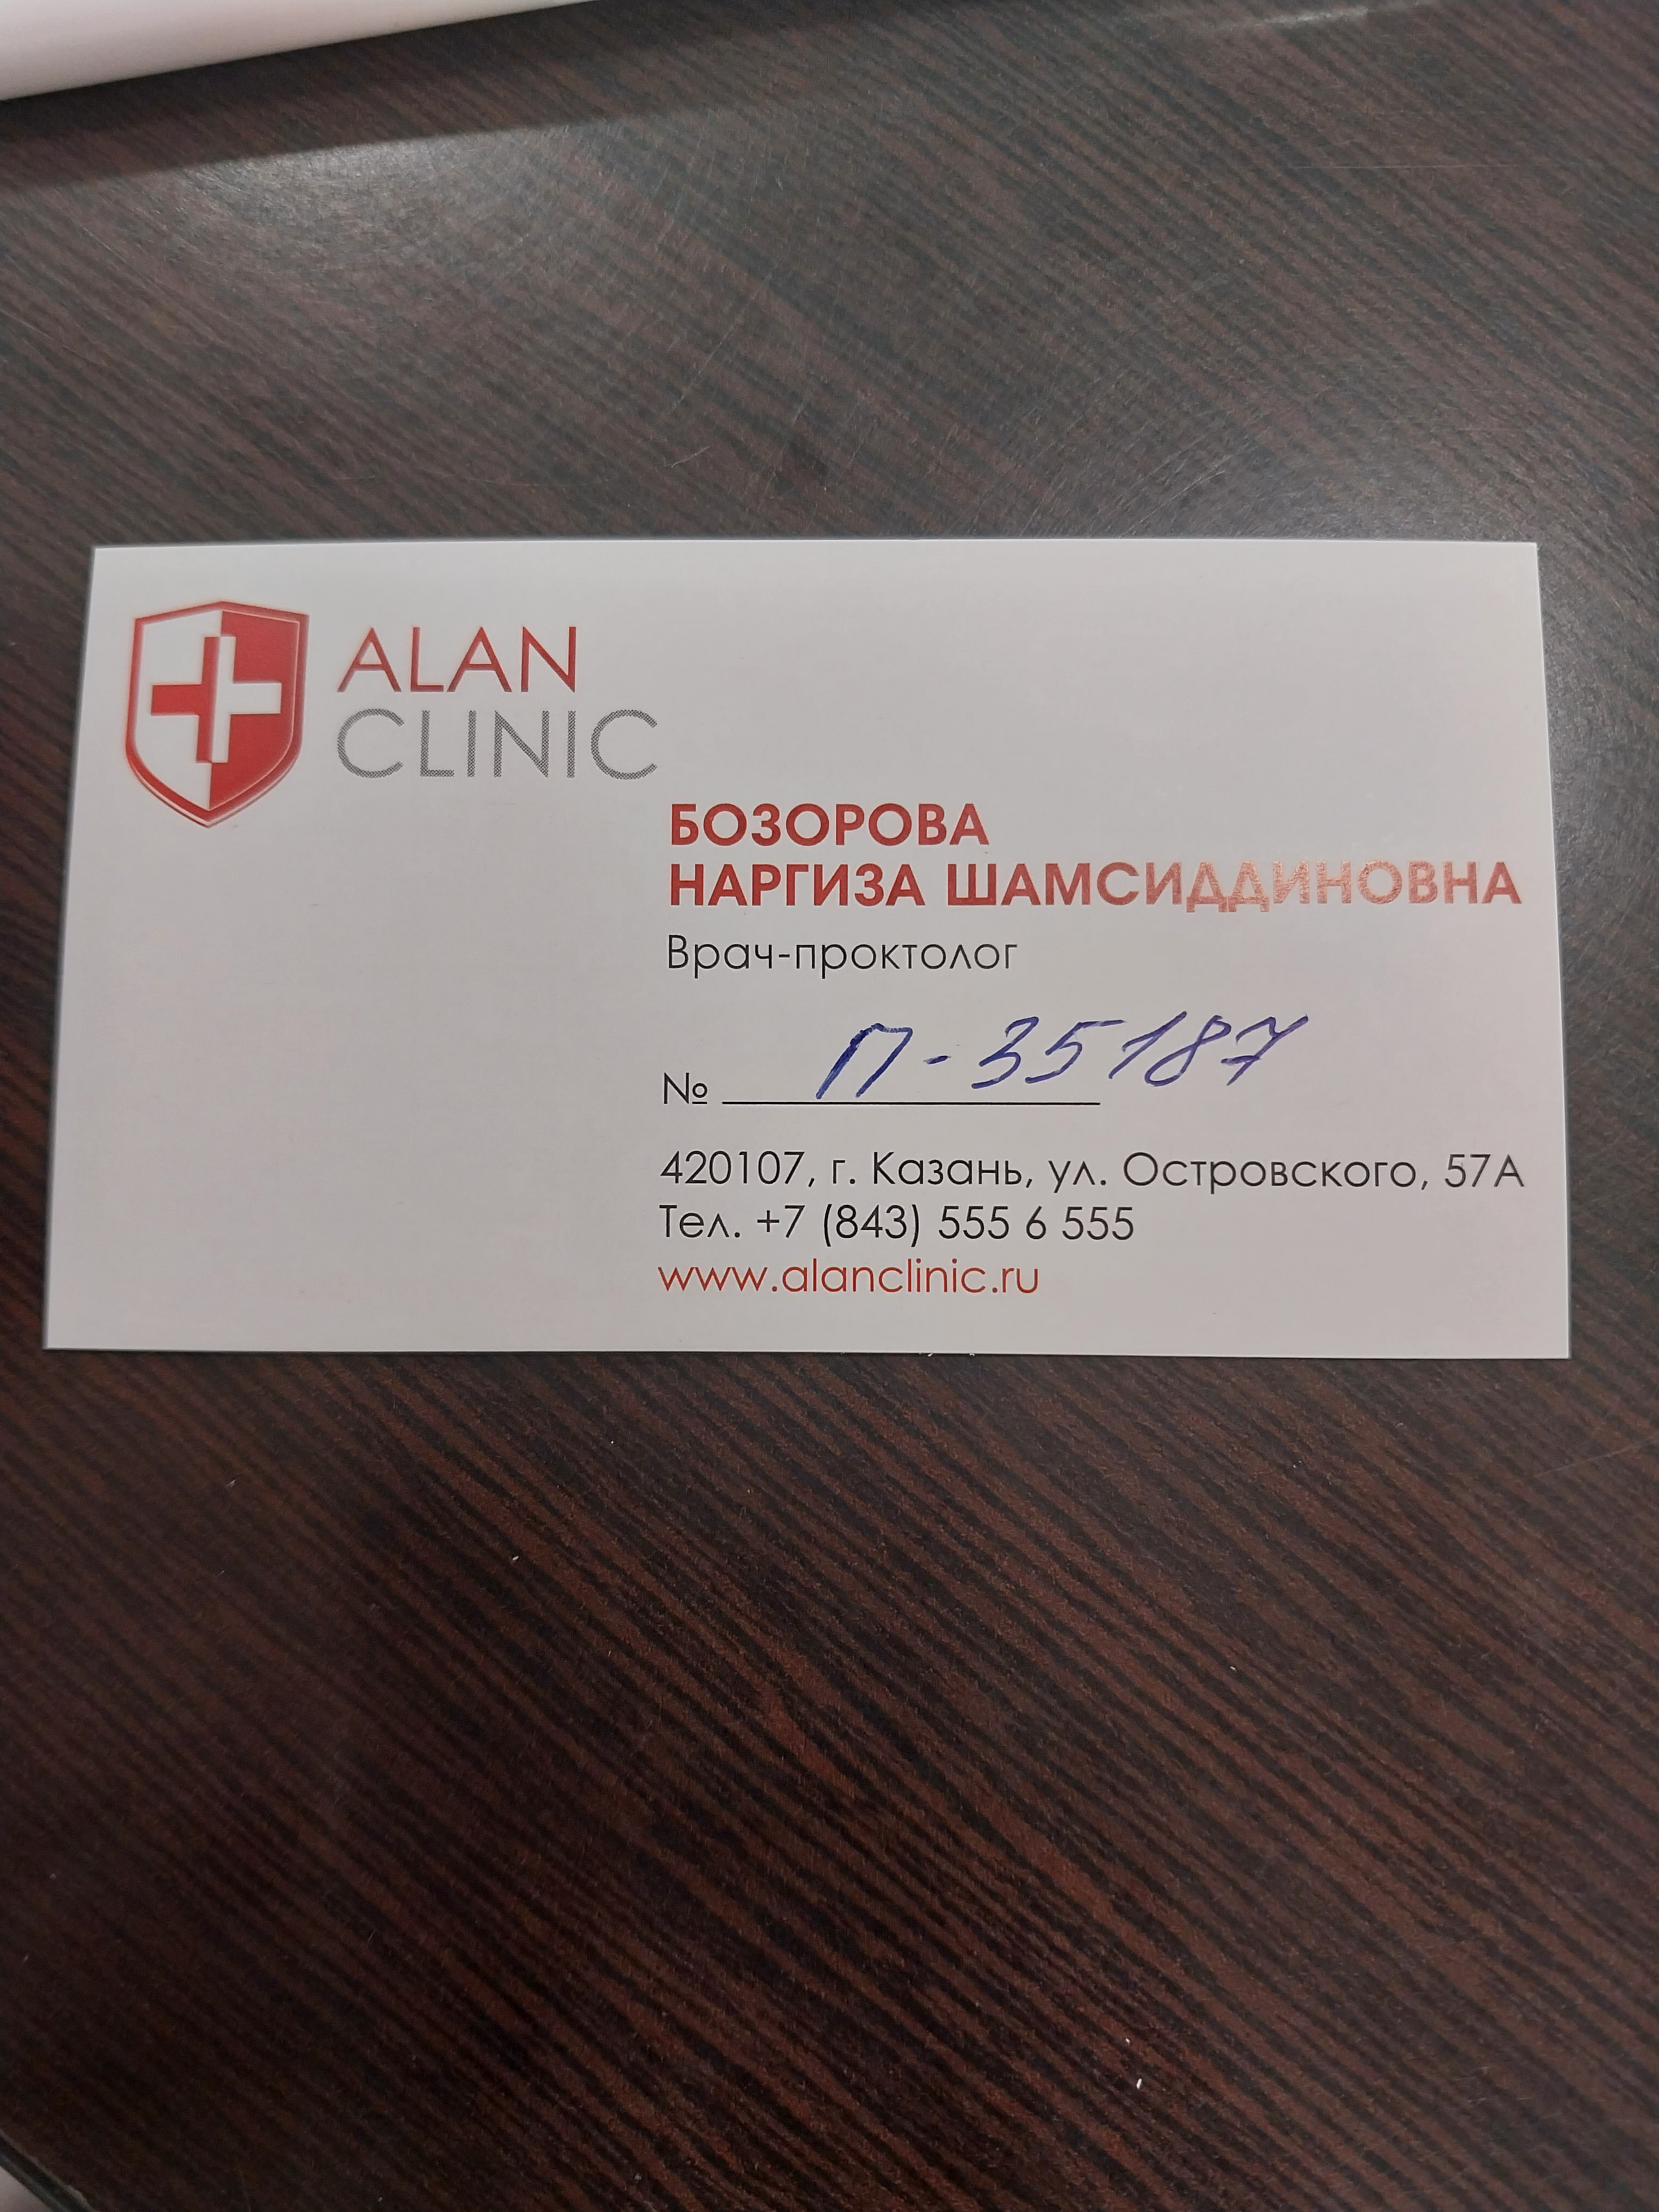 Консультация сексолога в Казани — задать вопрос врачу онлайн